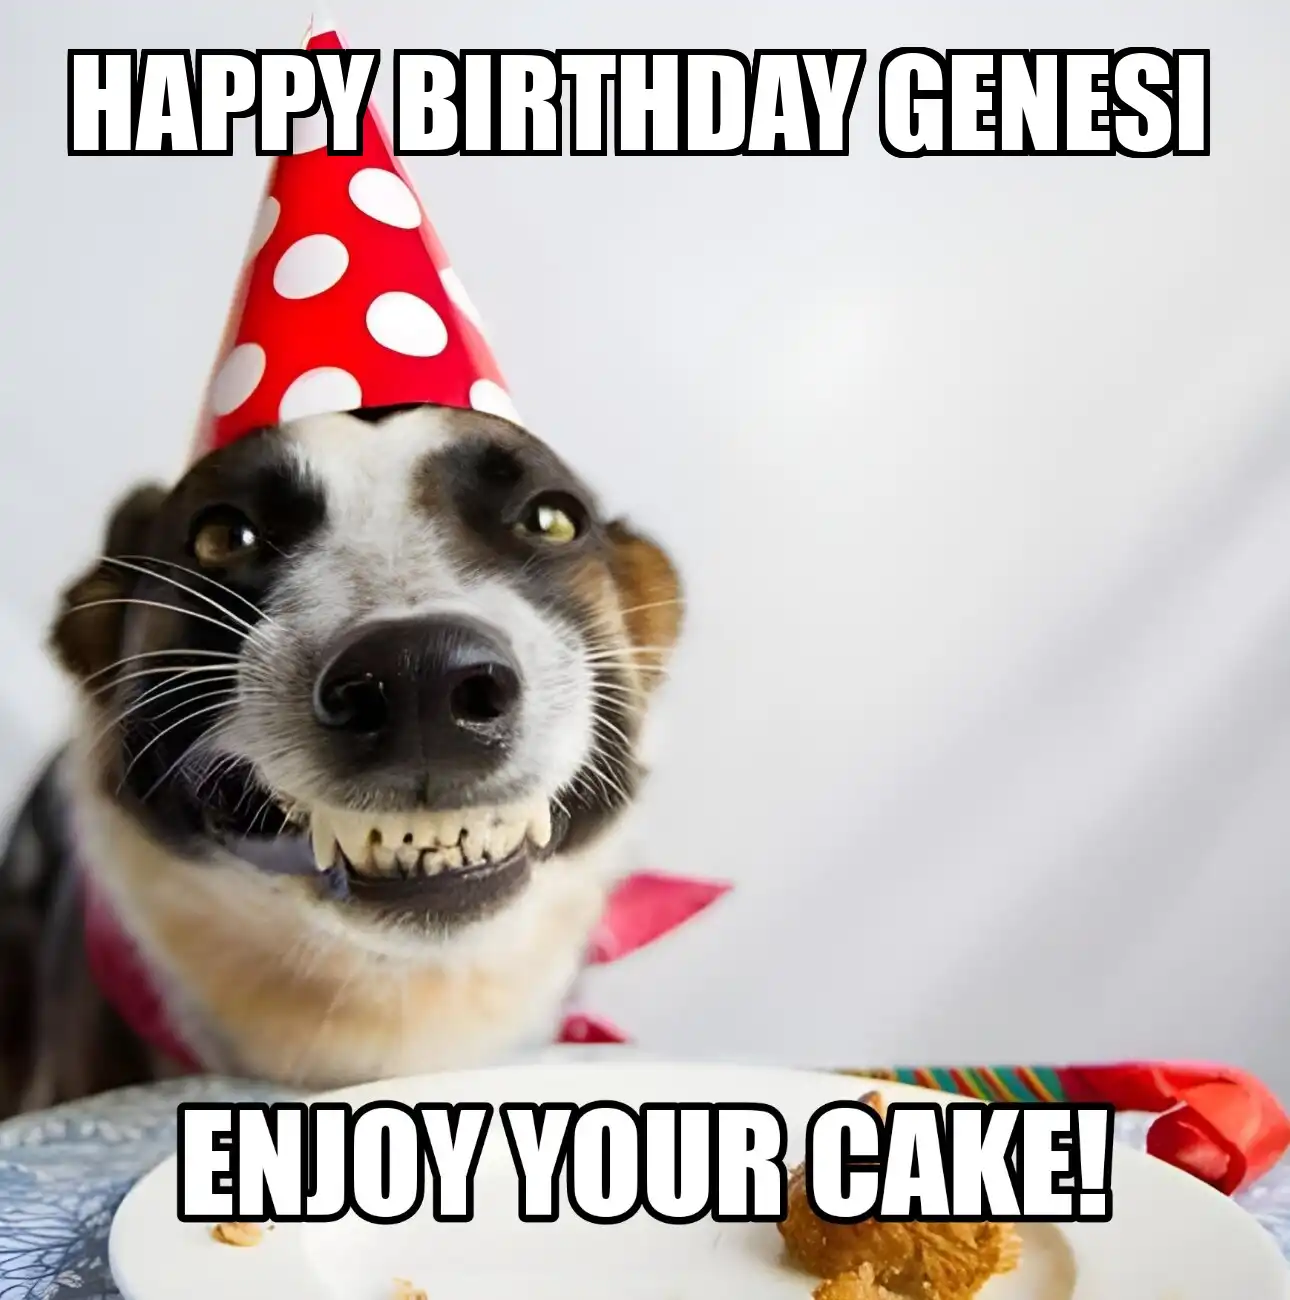 Happy Birthday Genesi Enjoy Your Cake Dog Meme